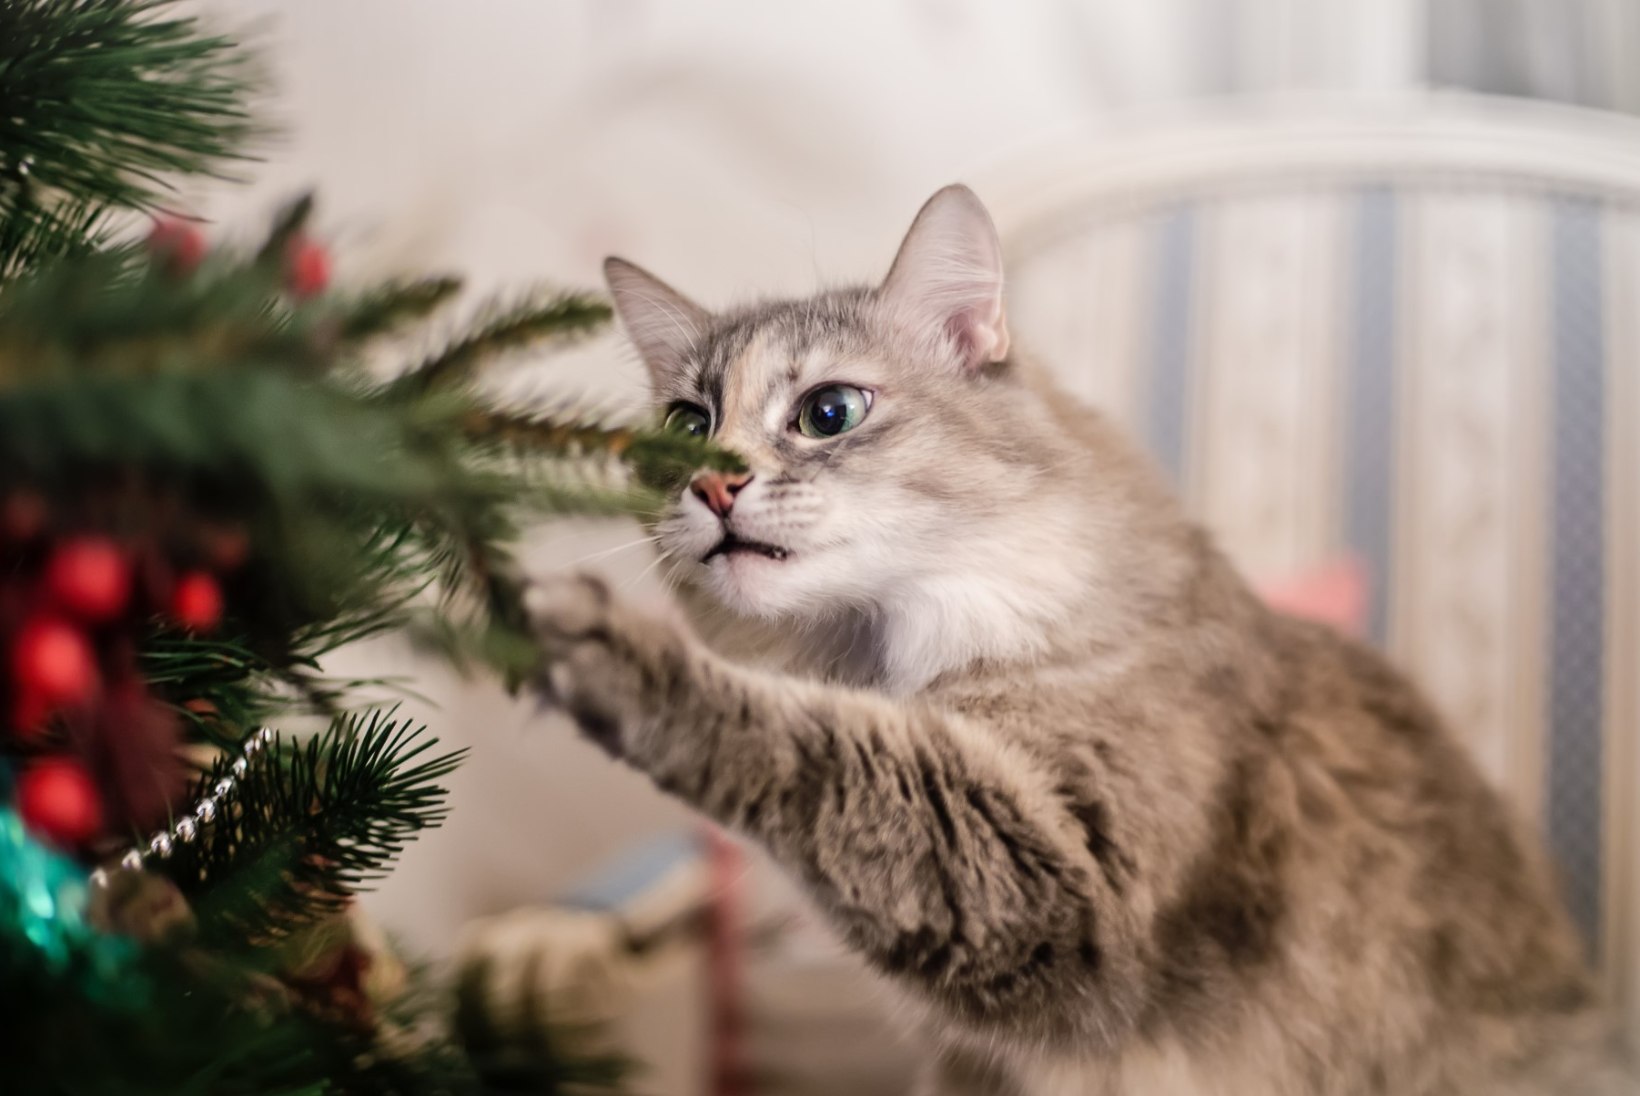 Kaitse kasside eest: mida teha, et jõulukuusk vastu peaks?